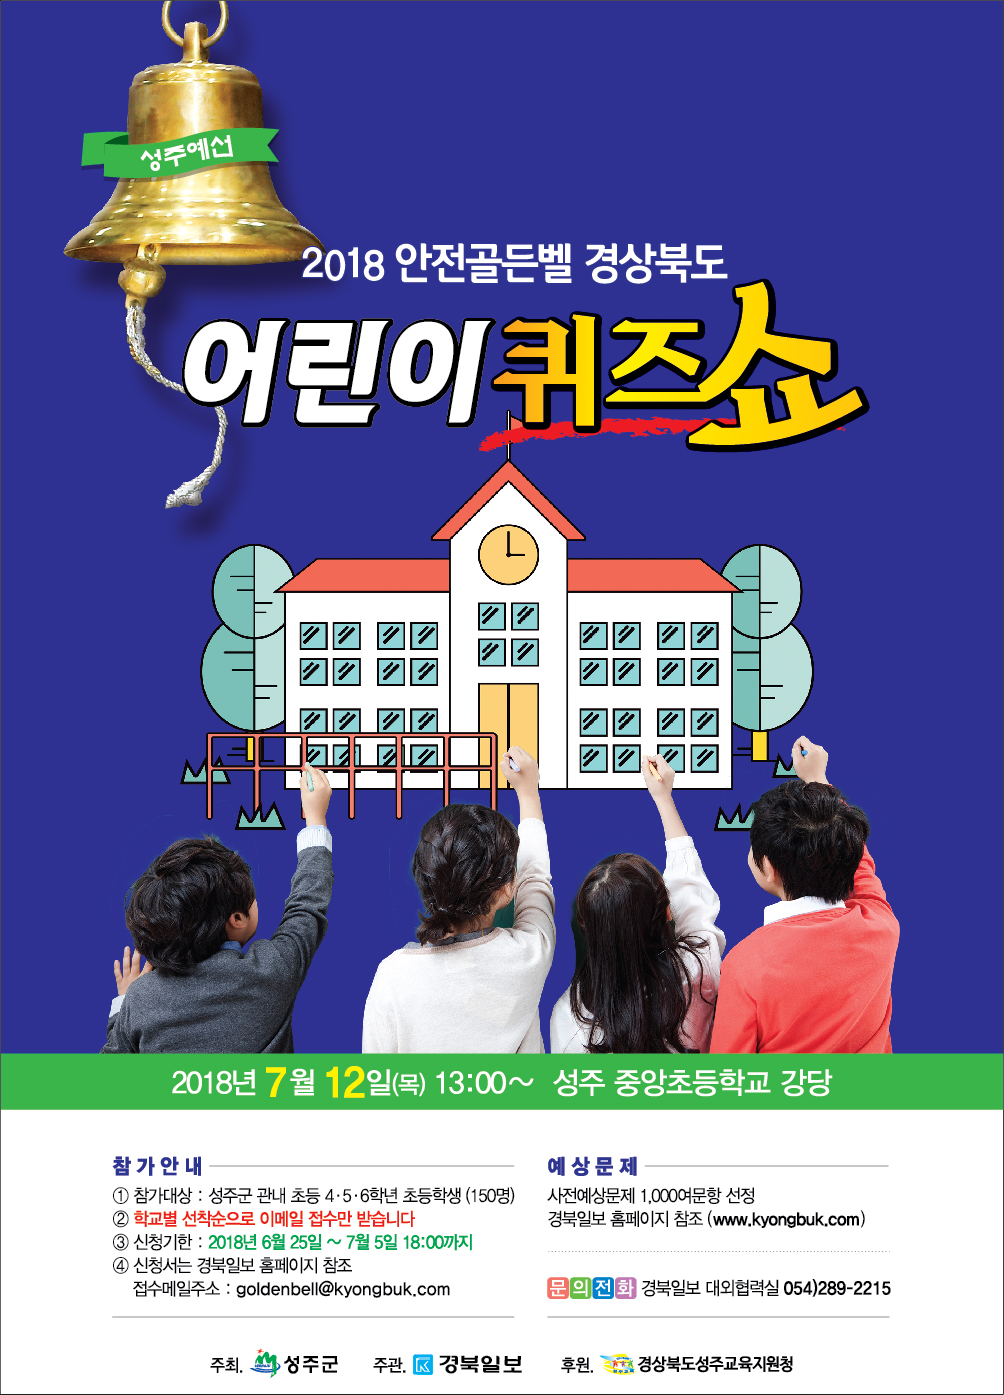 2018_안전골든벨 성주예선_pop.png